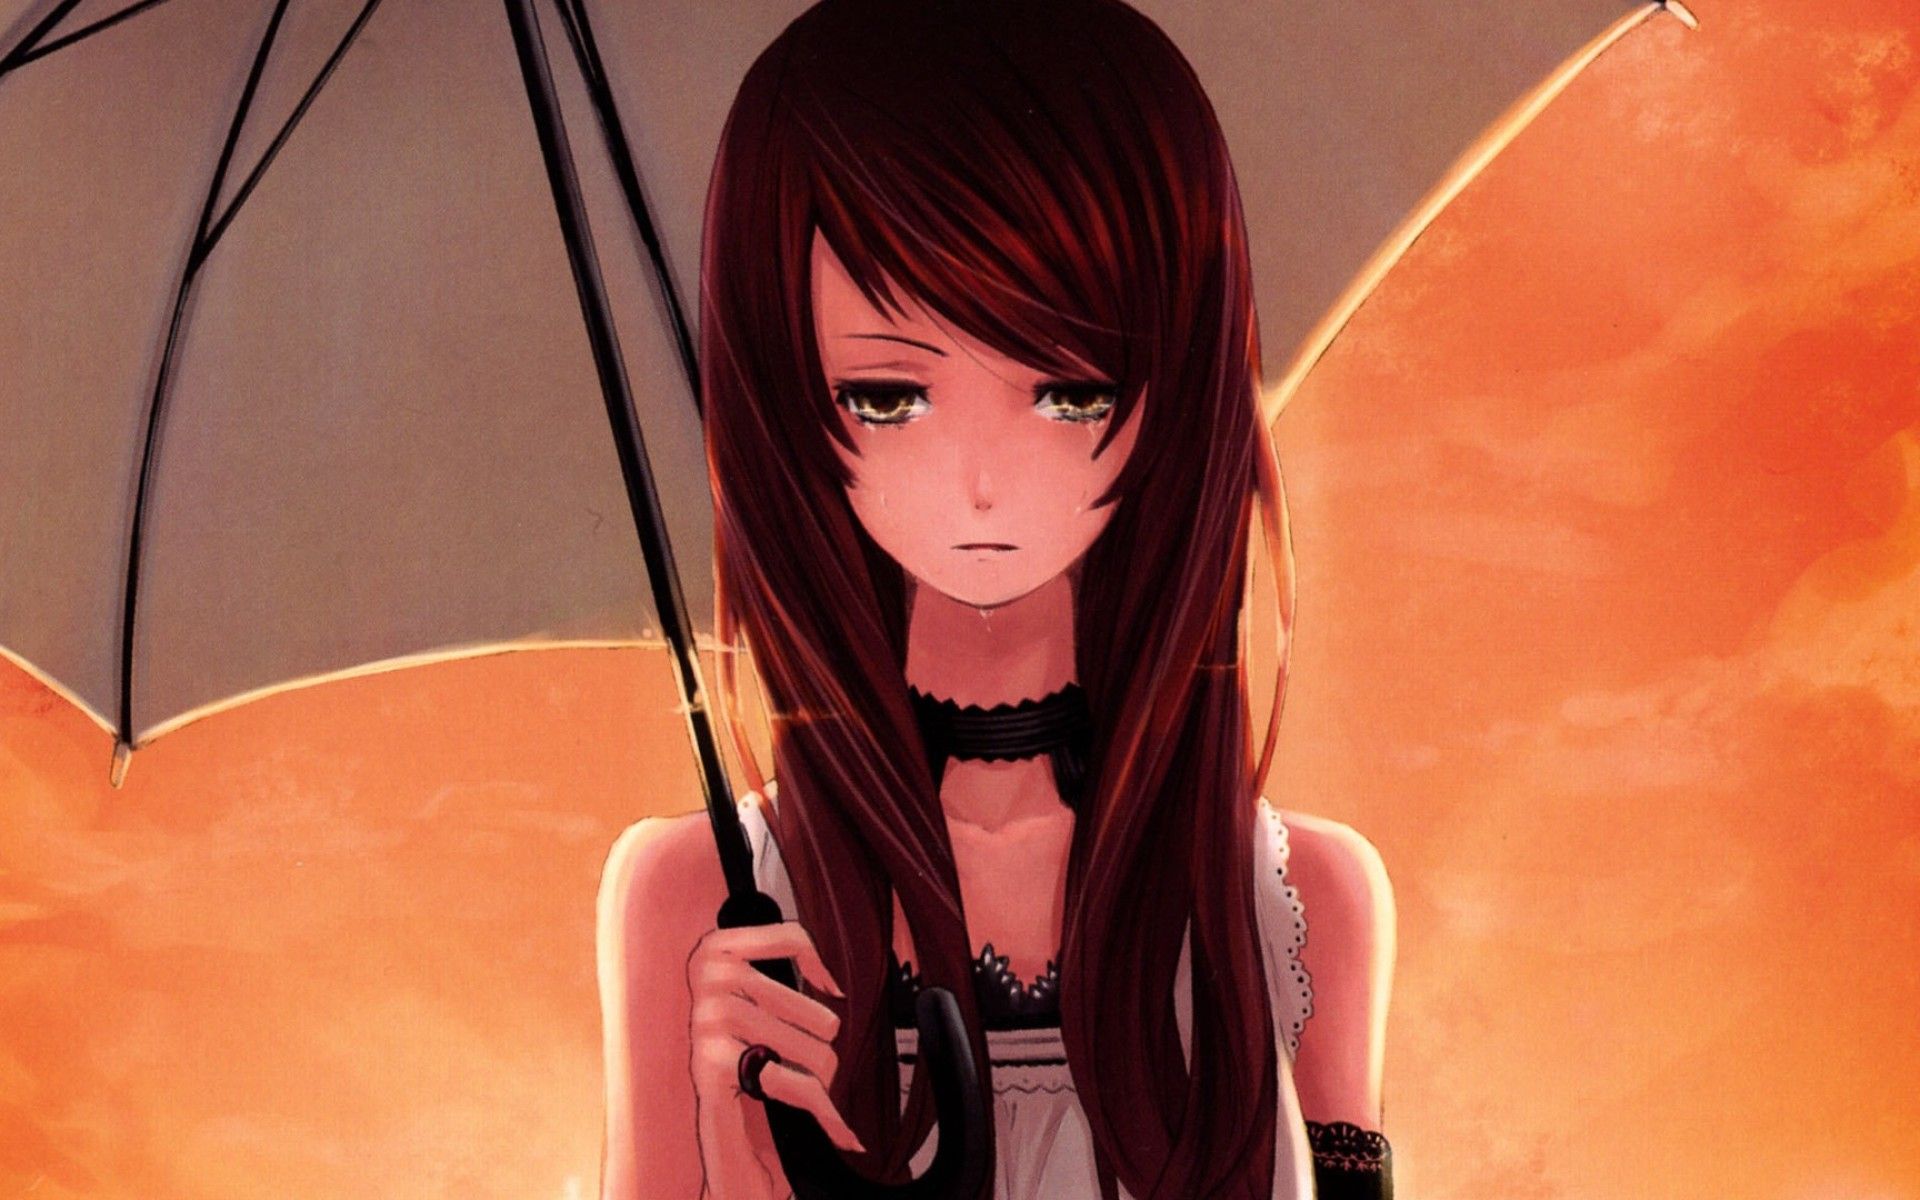 Sad Anime Girl 1080P Resolution HD 4k Wallpaper, Image